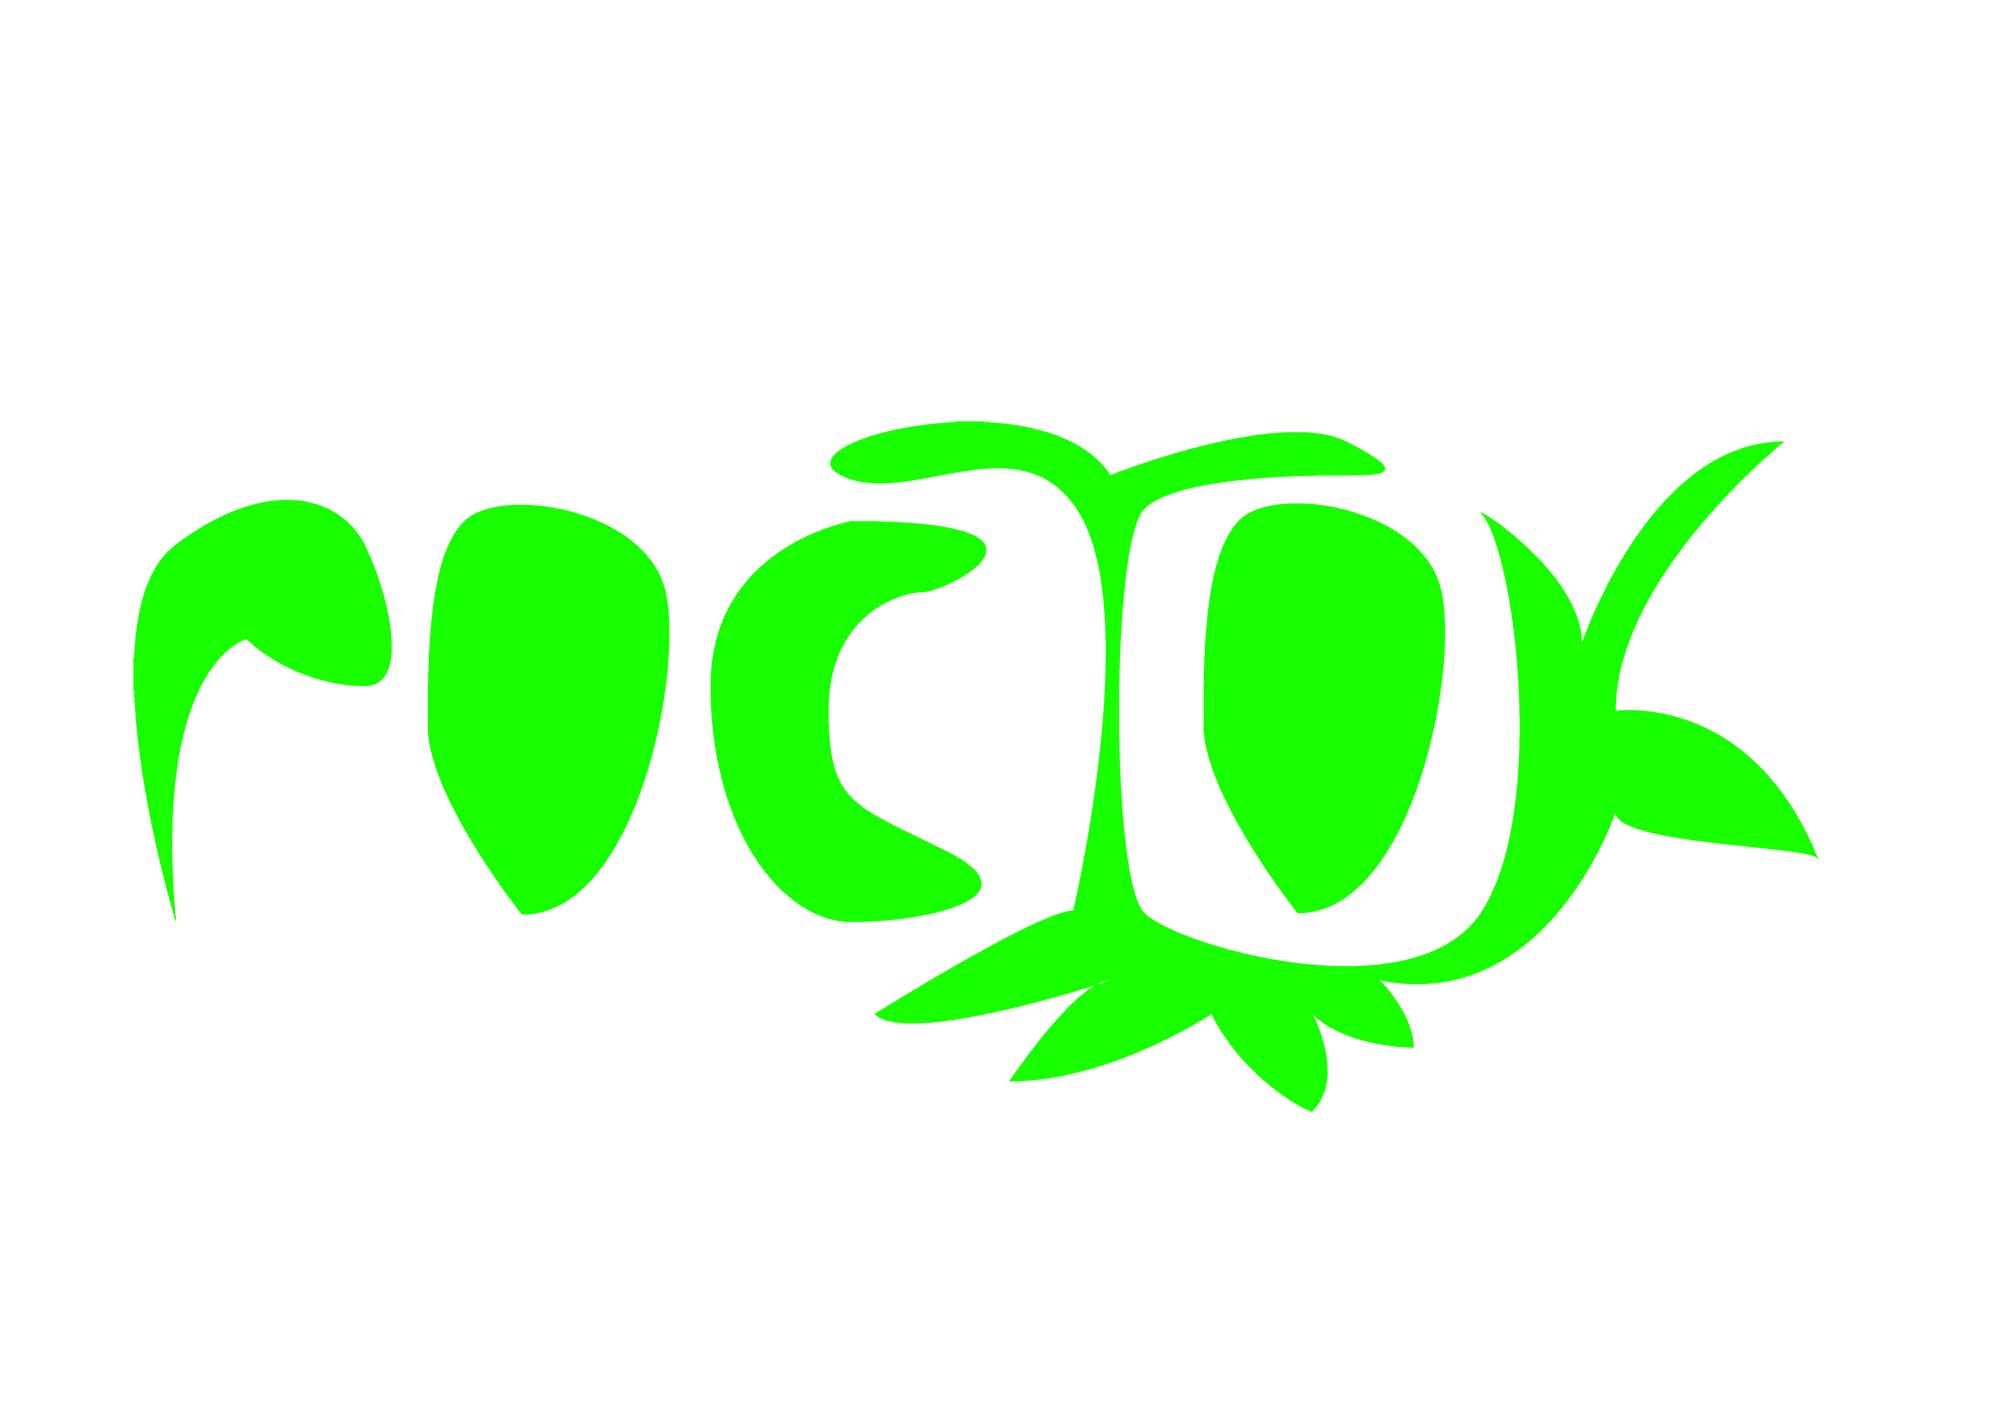 Логотип (зонтичный) для Группы Компаний - дизайнер ideymnogo